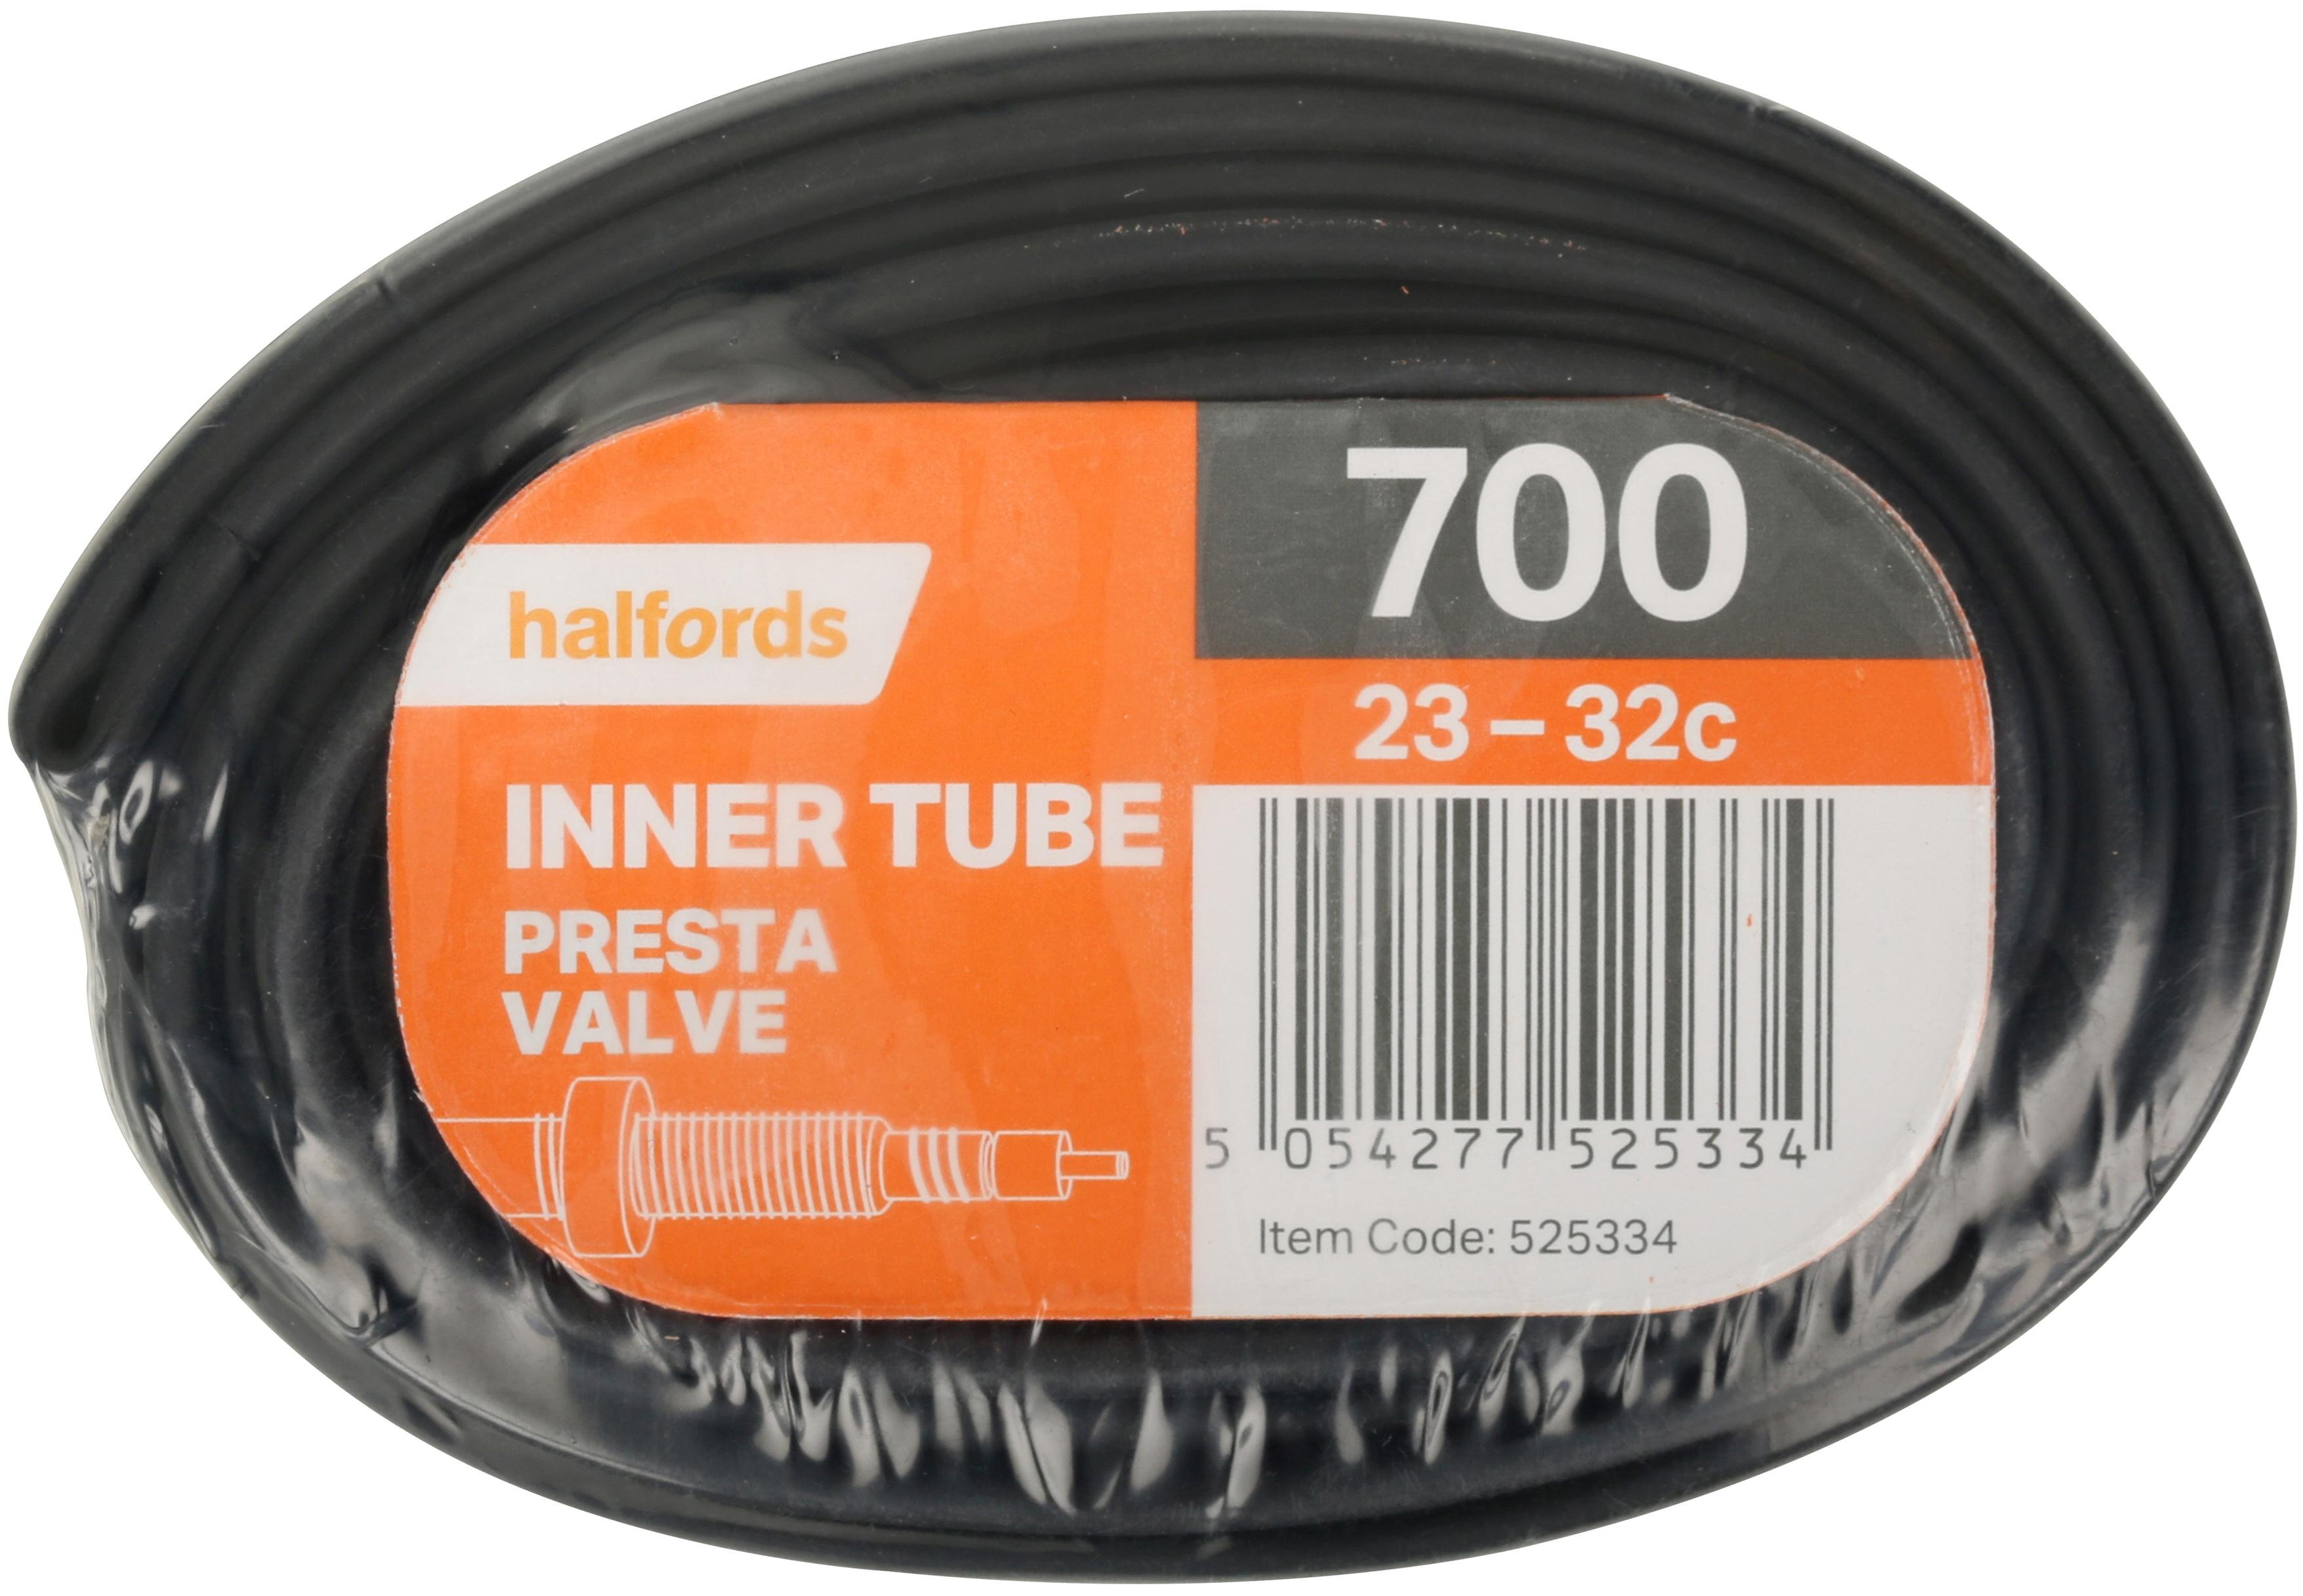 halfords inner tubes 27.5